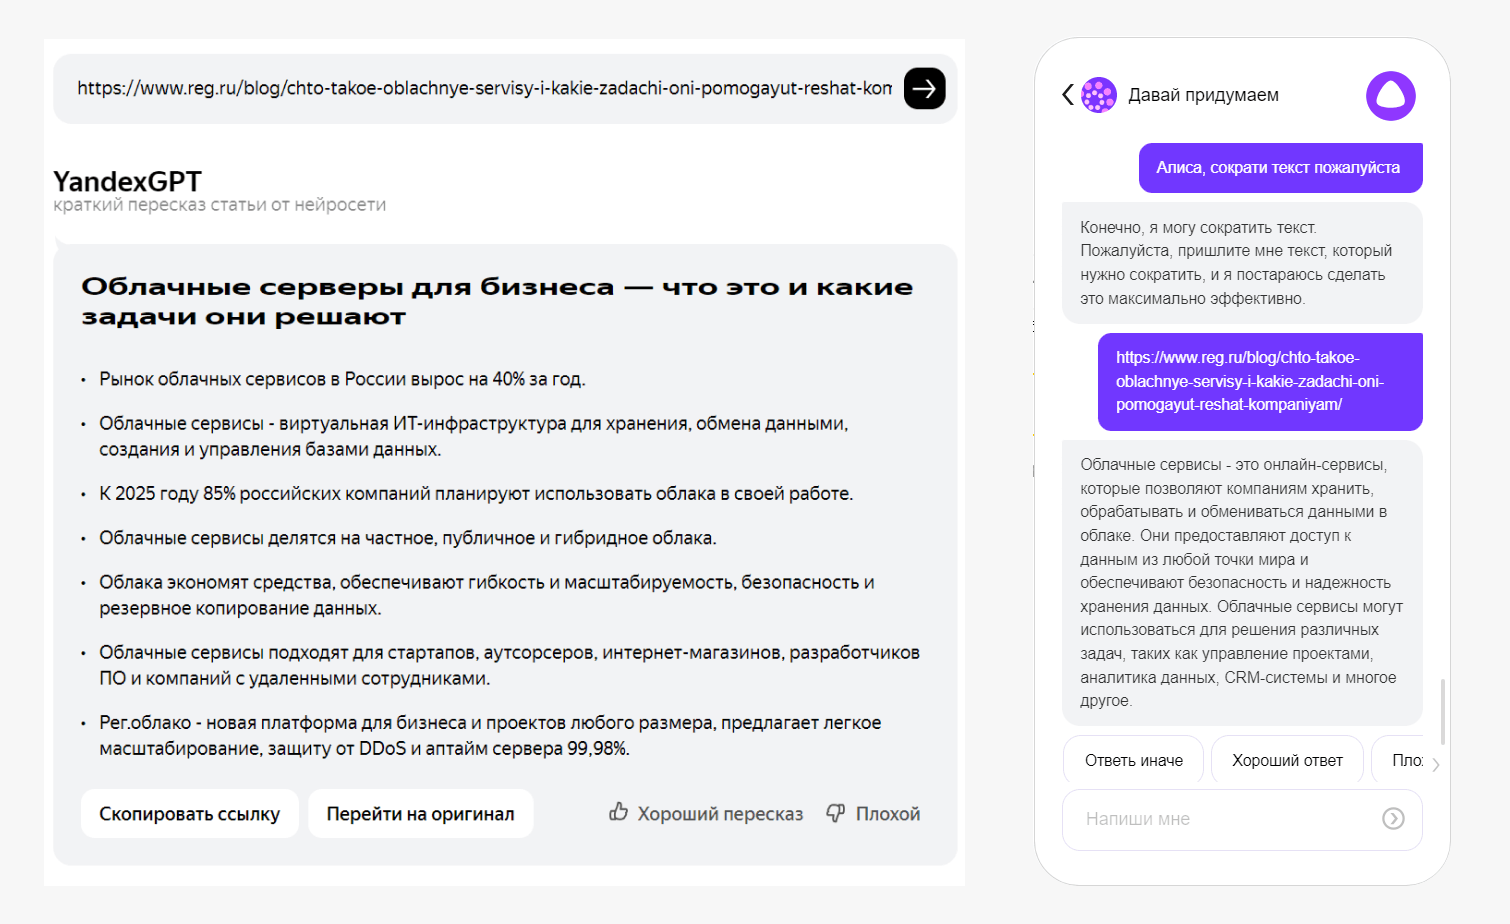 Нейросеть YandexGPT умеет пересказывать тексты